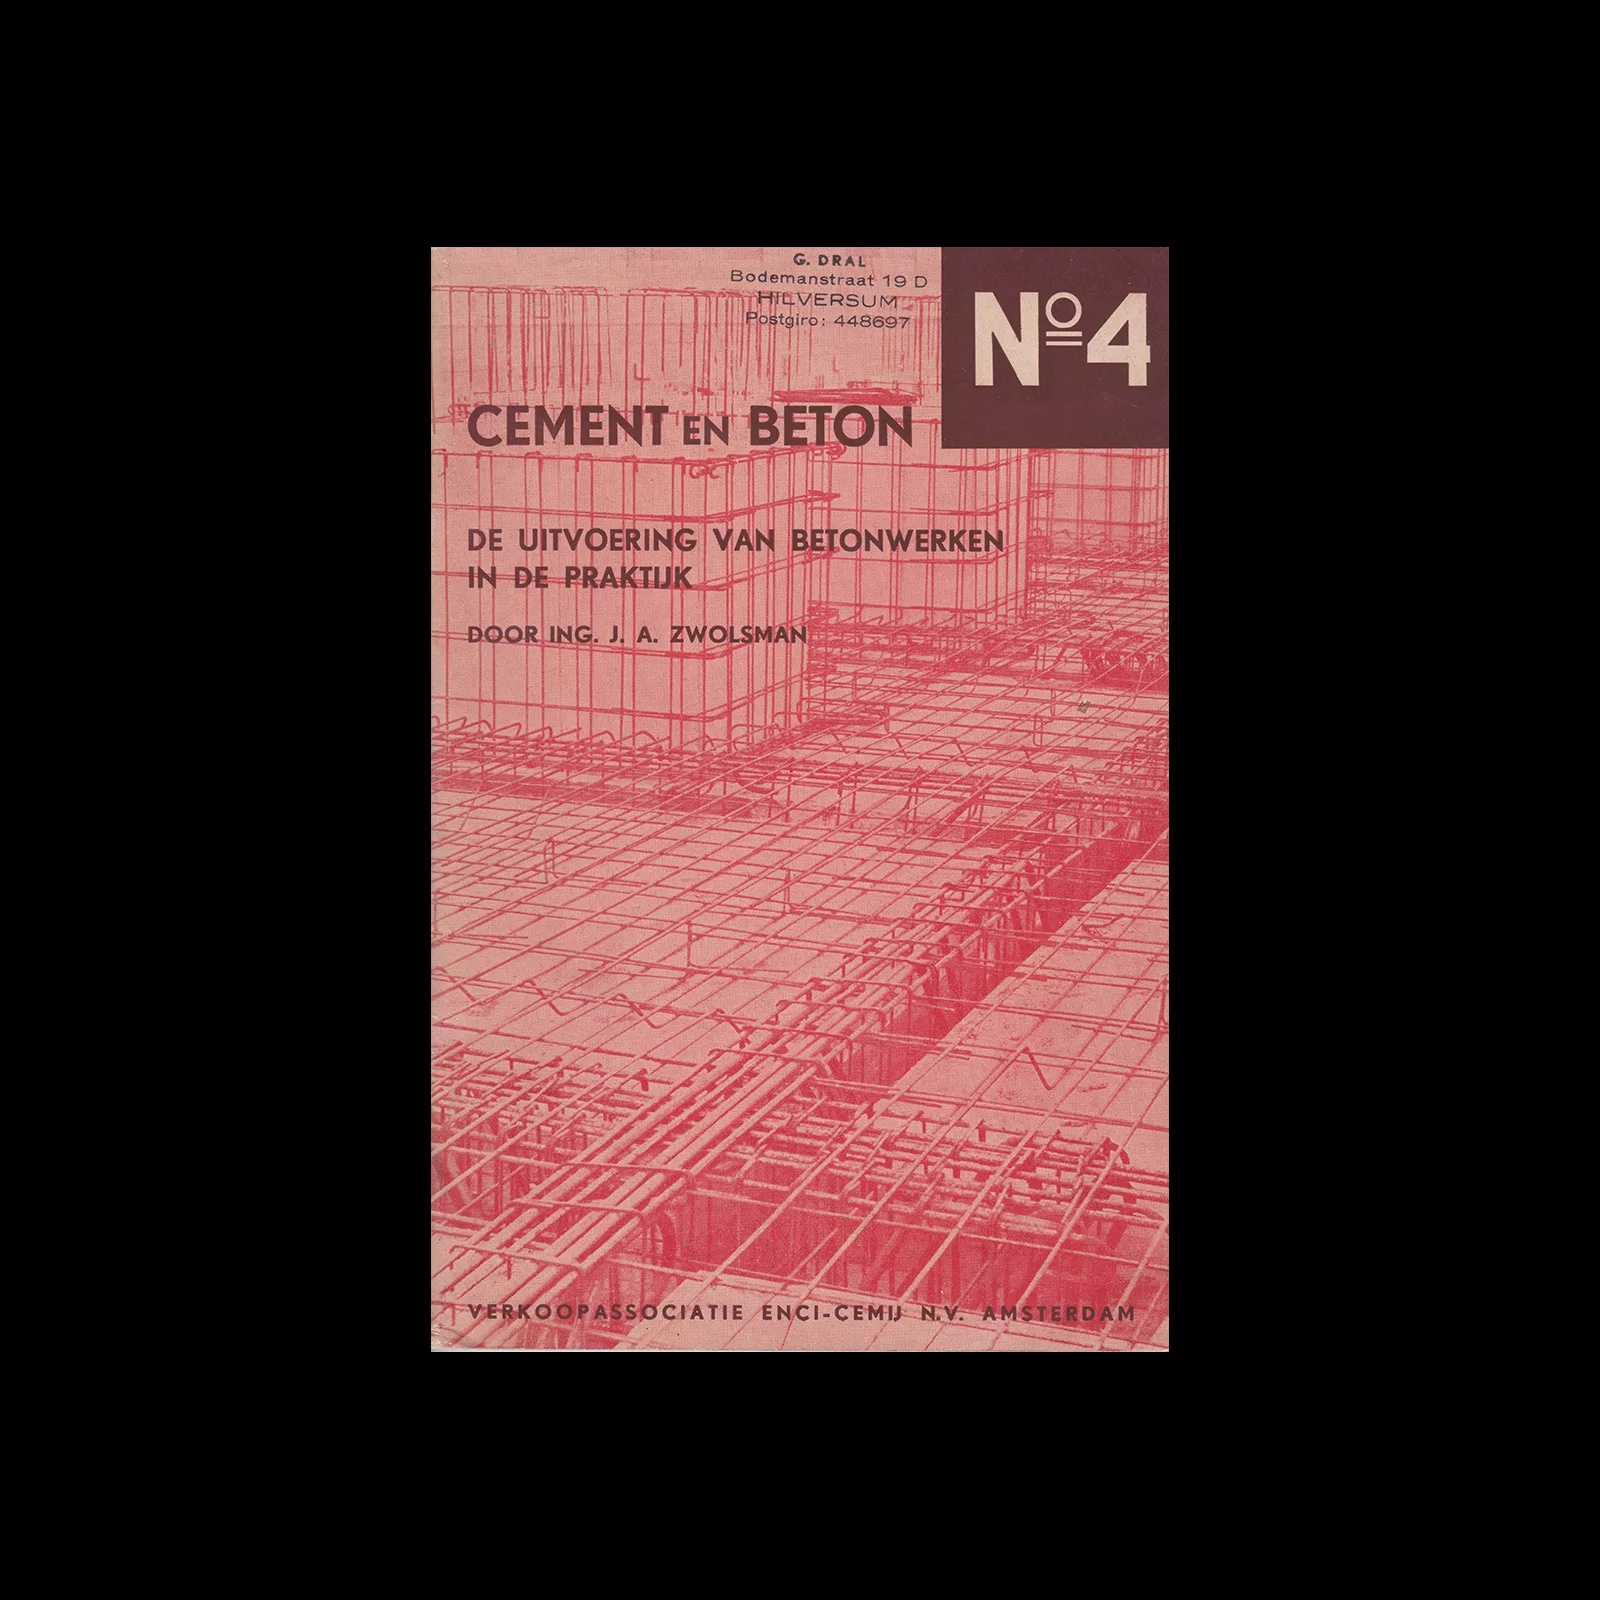 Cement en Beton, 4, 1940. Design by Paul Schuitema.